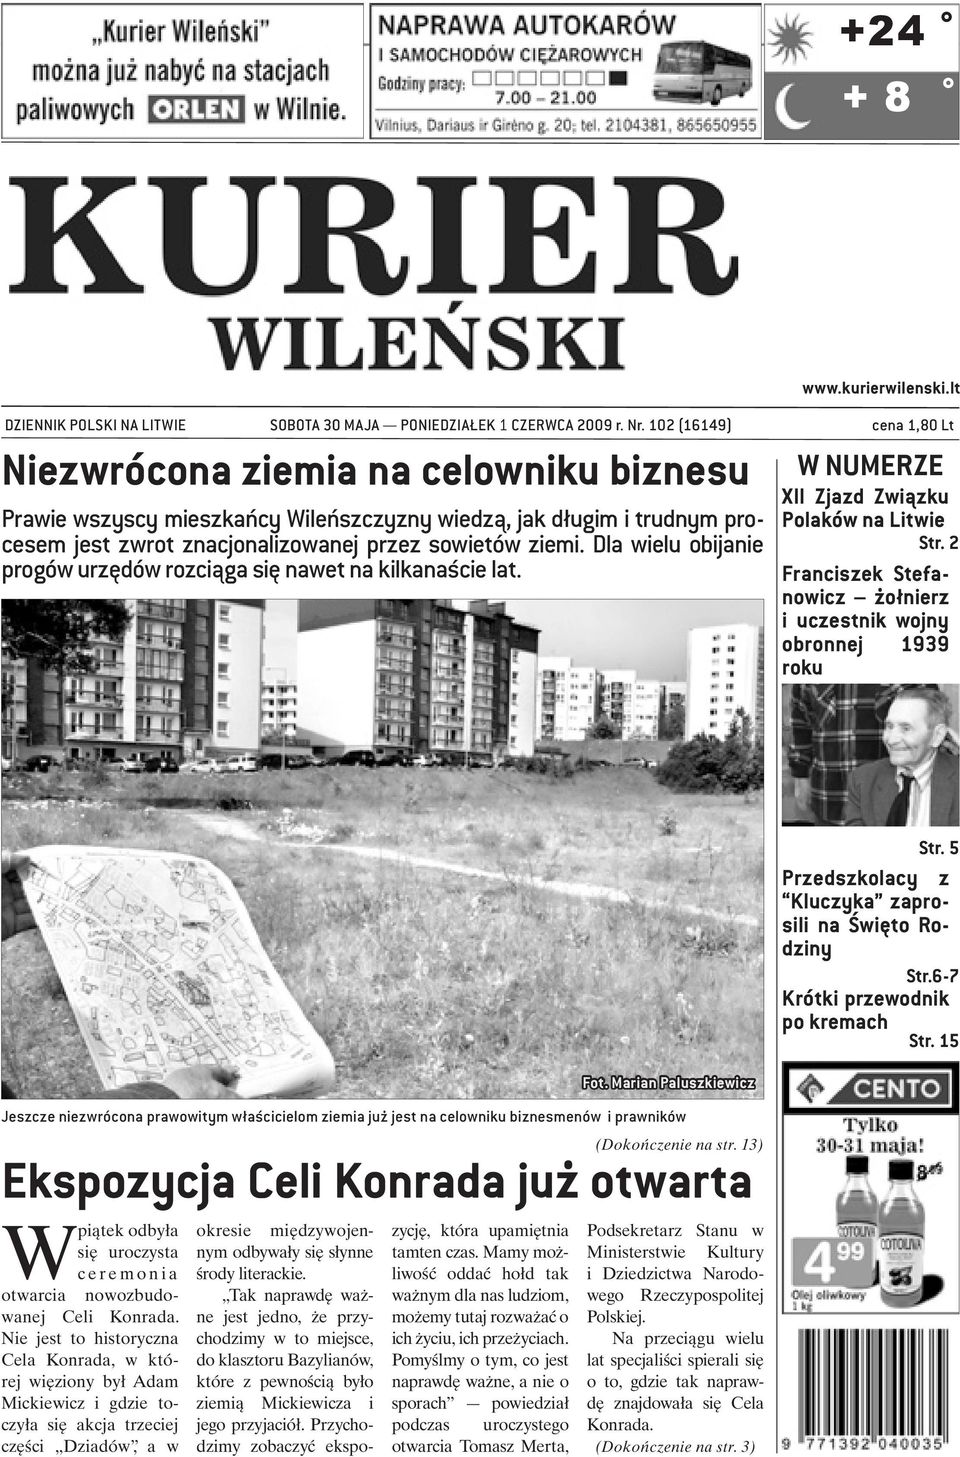 Dla wielu obijanie progów urzędów rozciąga się nawet na kilkanaście lat. W NUMERZE XII Zjazd Związku Polaków na Litwie Str.